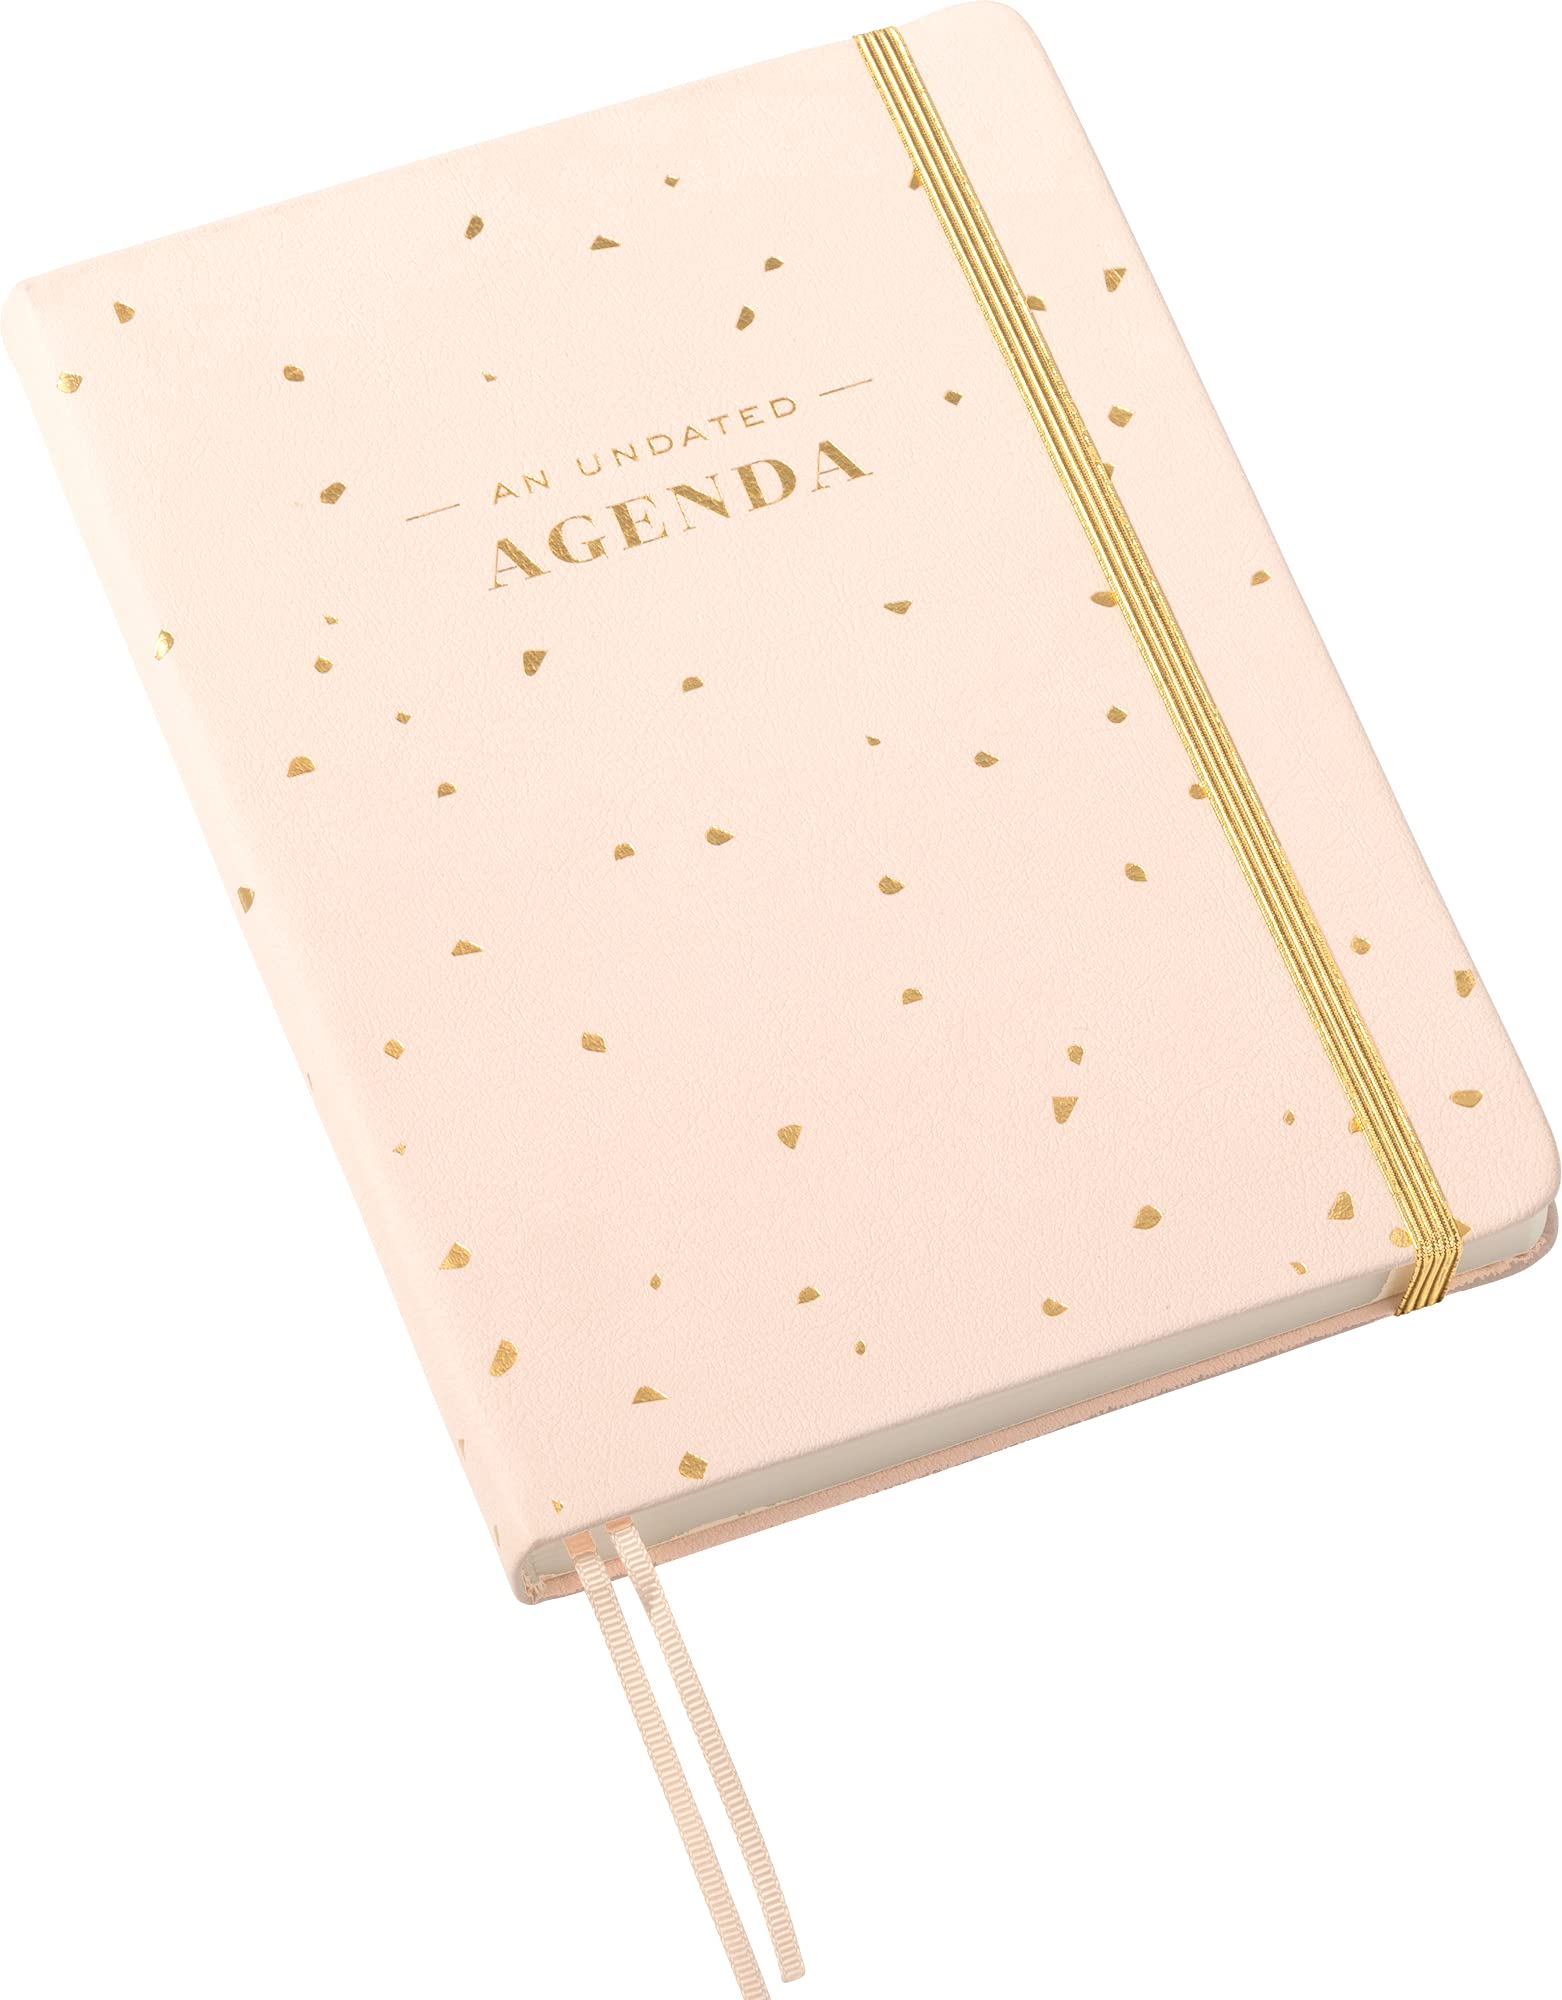 Undated Agenda Journal